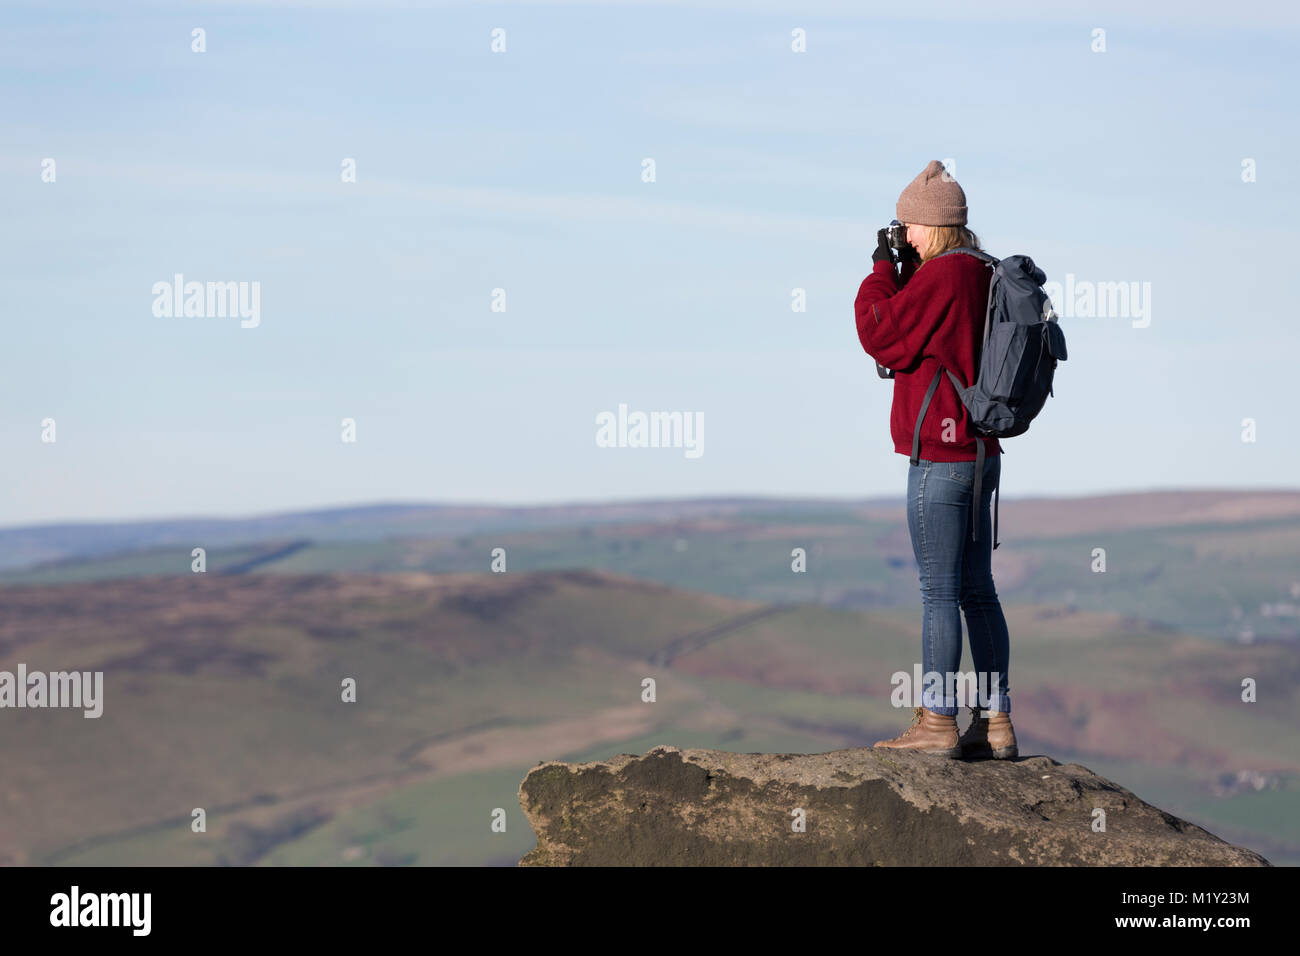 Großbritannien, Derbyshire, Peak District National Park, ein Walker Fotografien von stanage Edge. Stockfoto